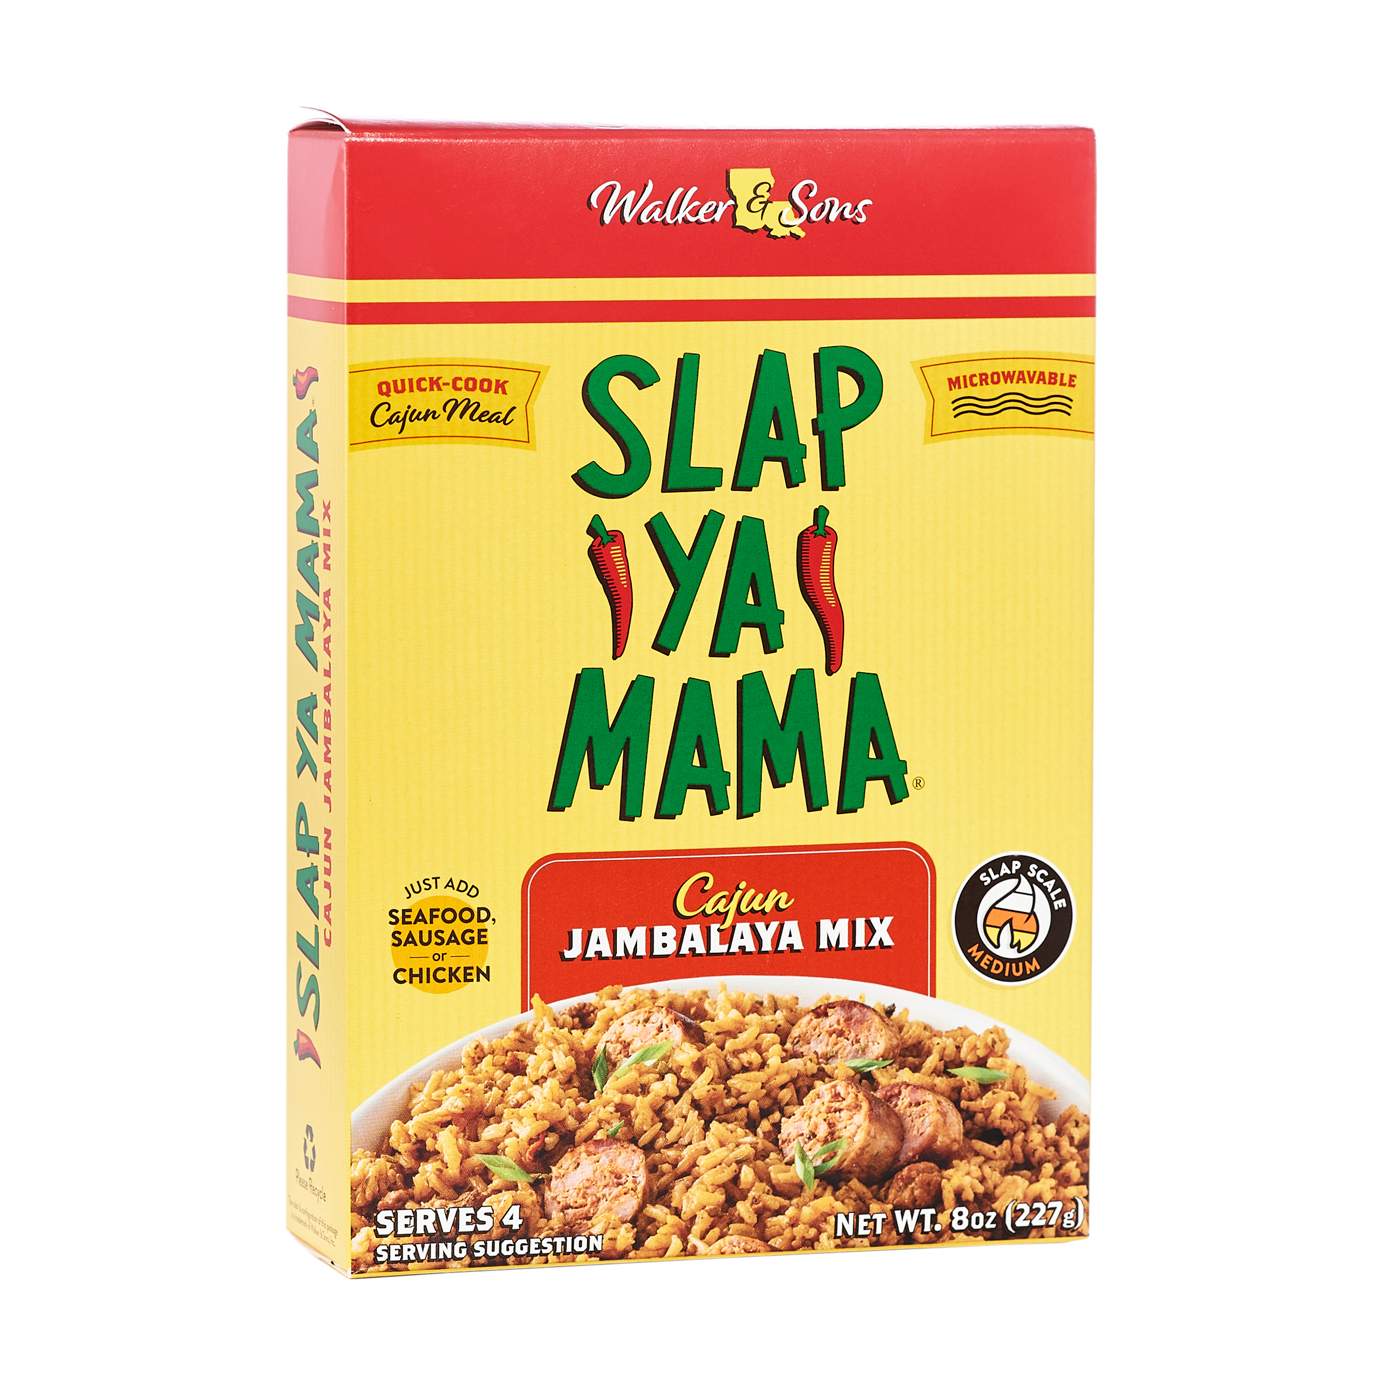 Slap Ya Mama Low Sodium Cajun Seasoning - 6 oz